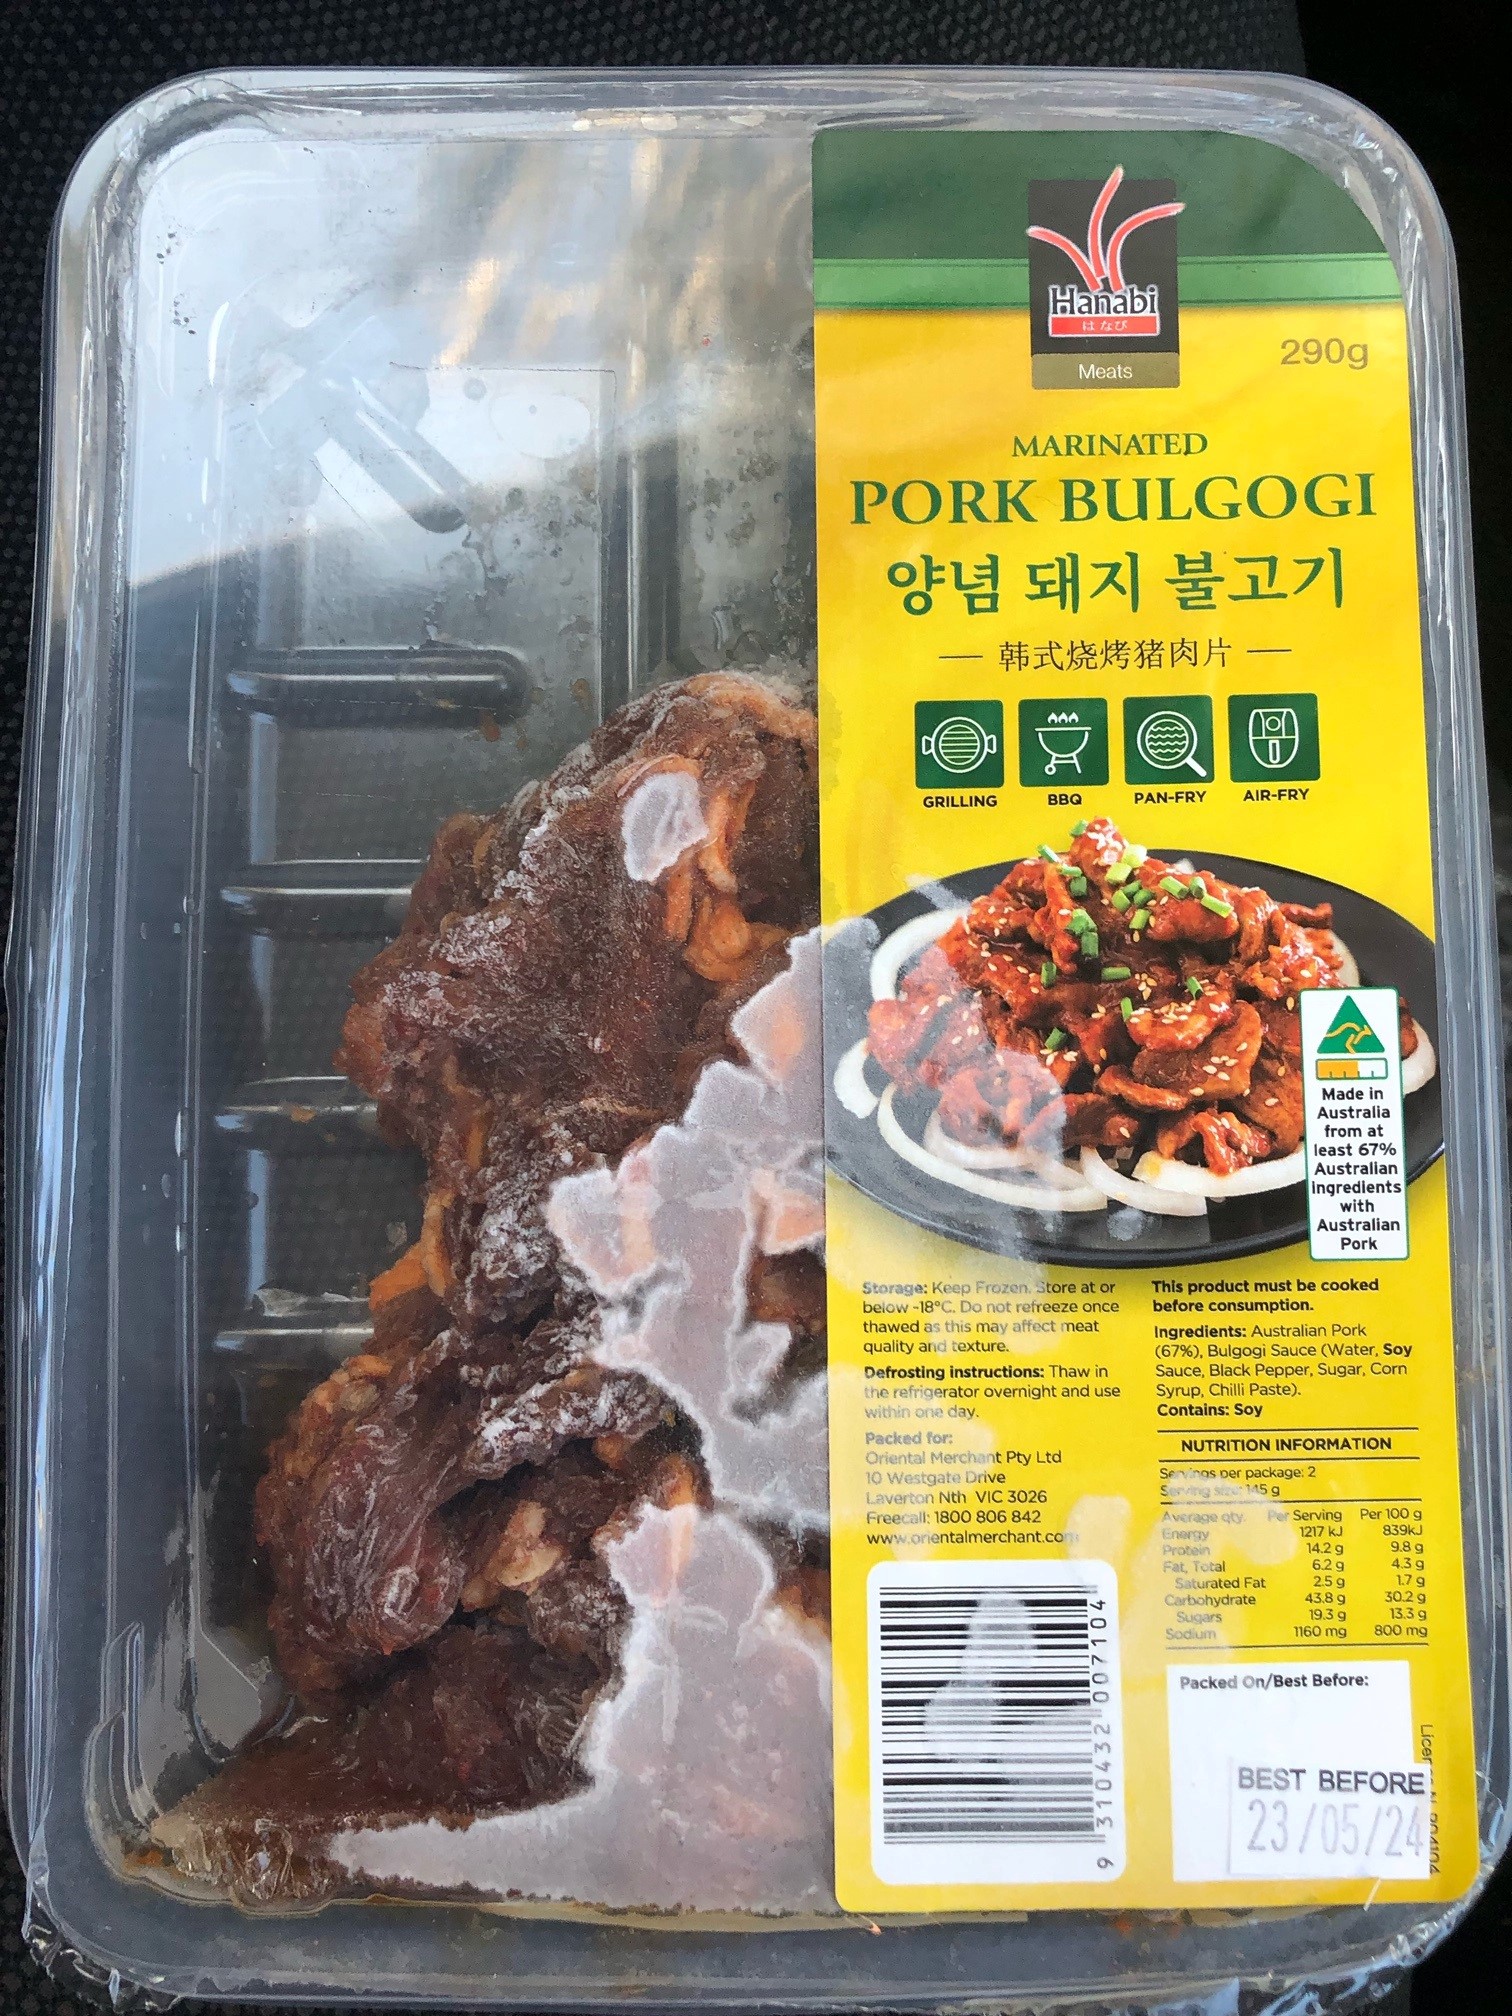 Pork Bulgogi image